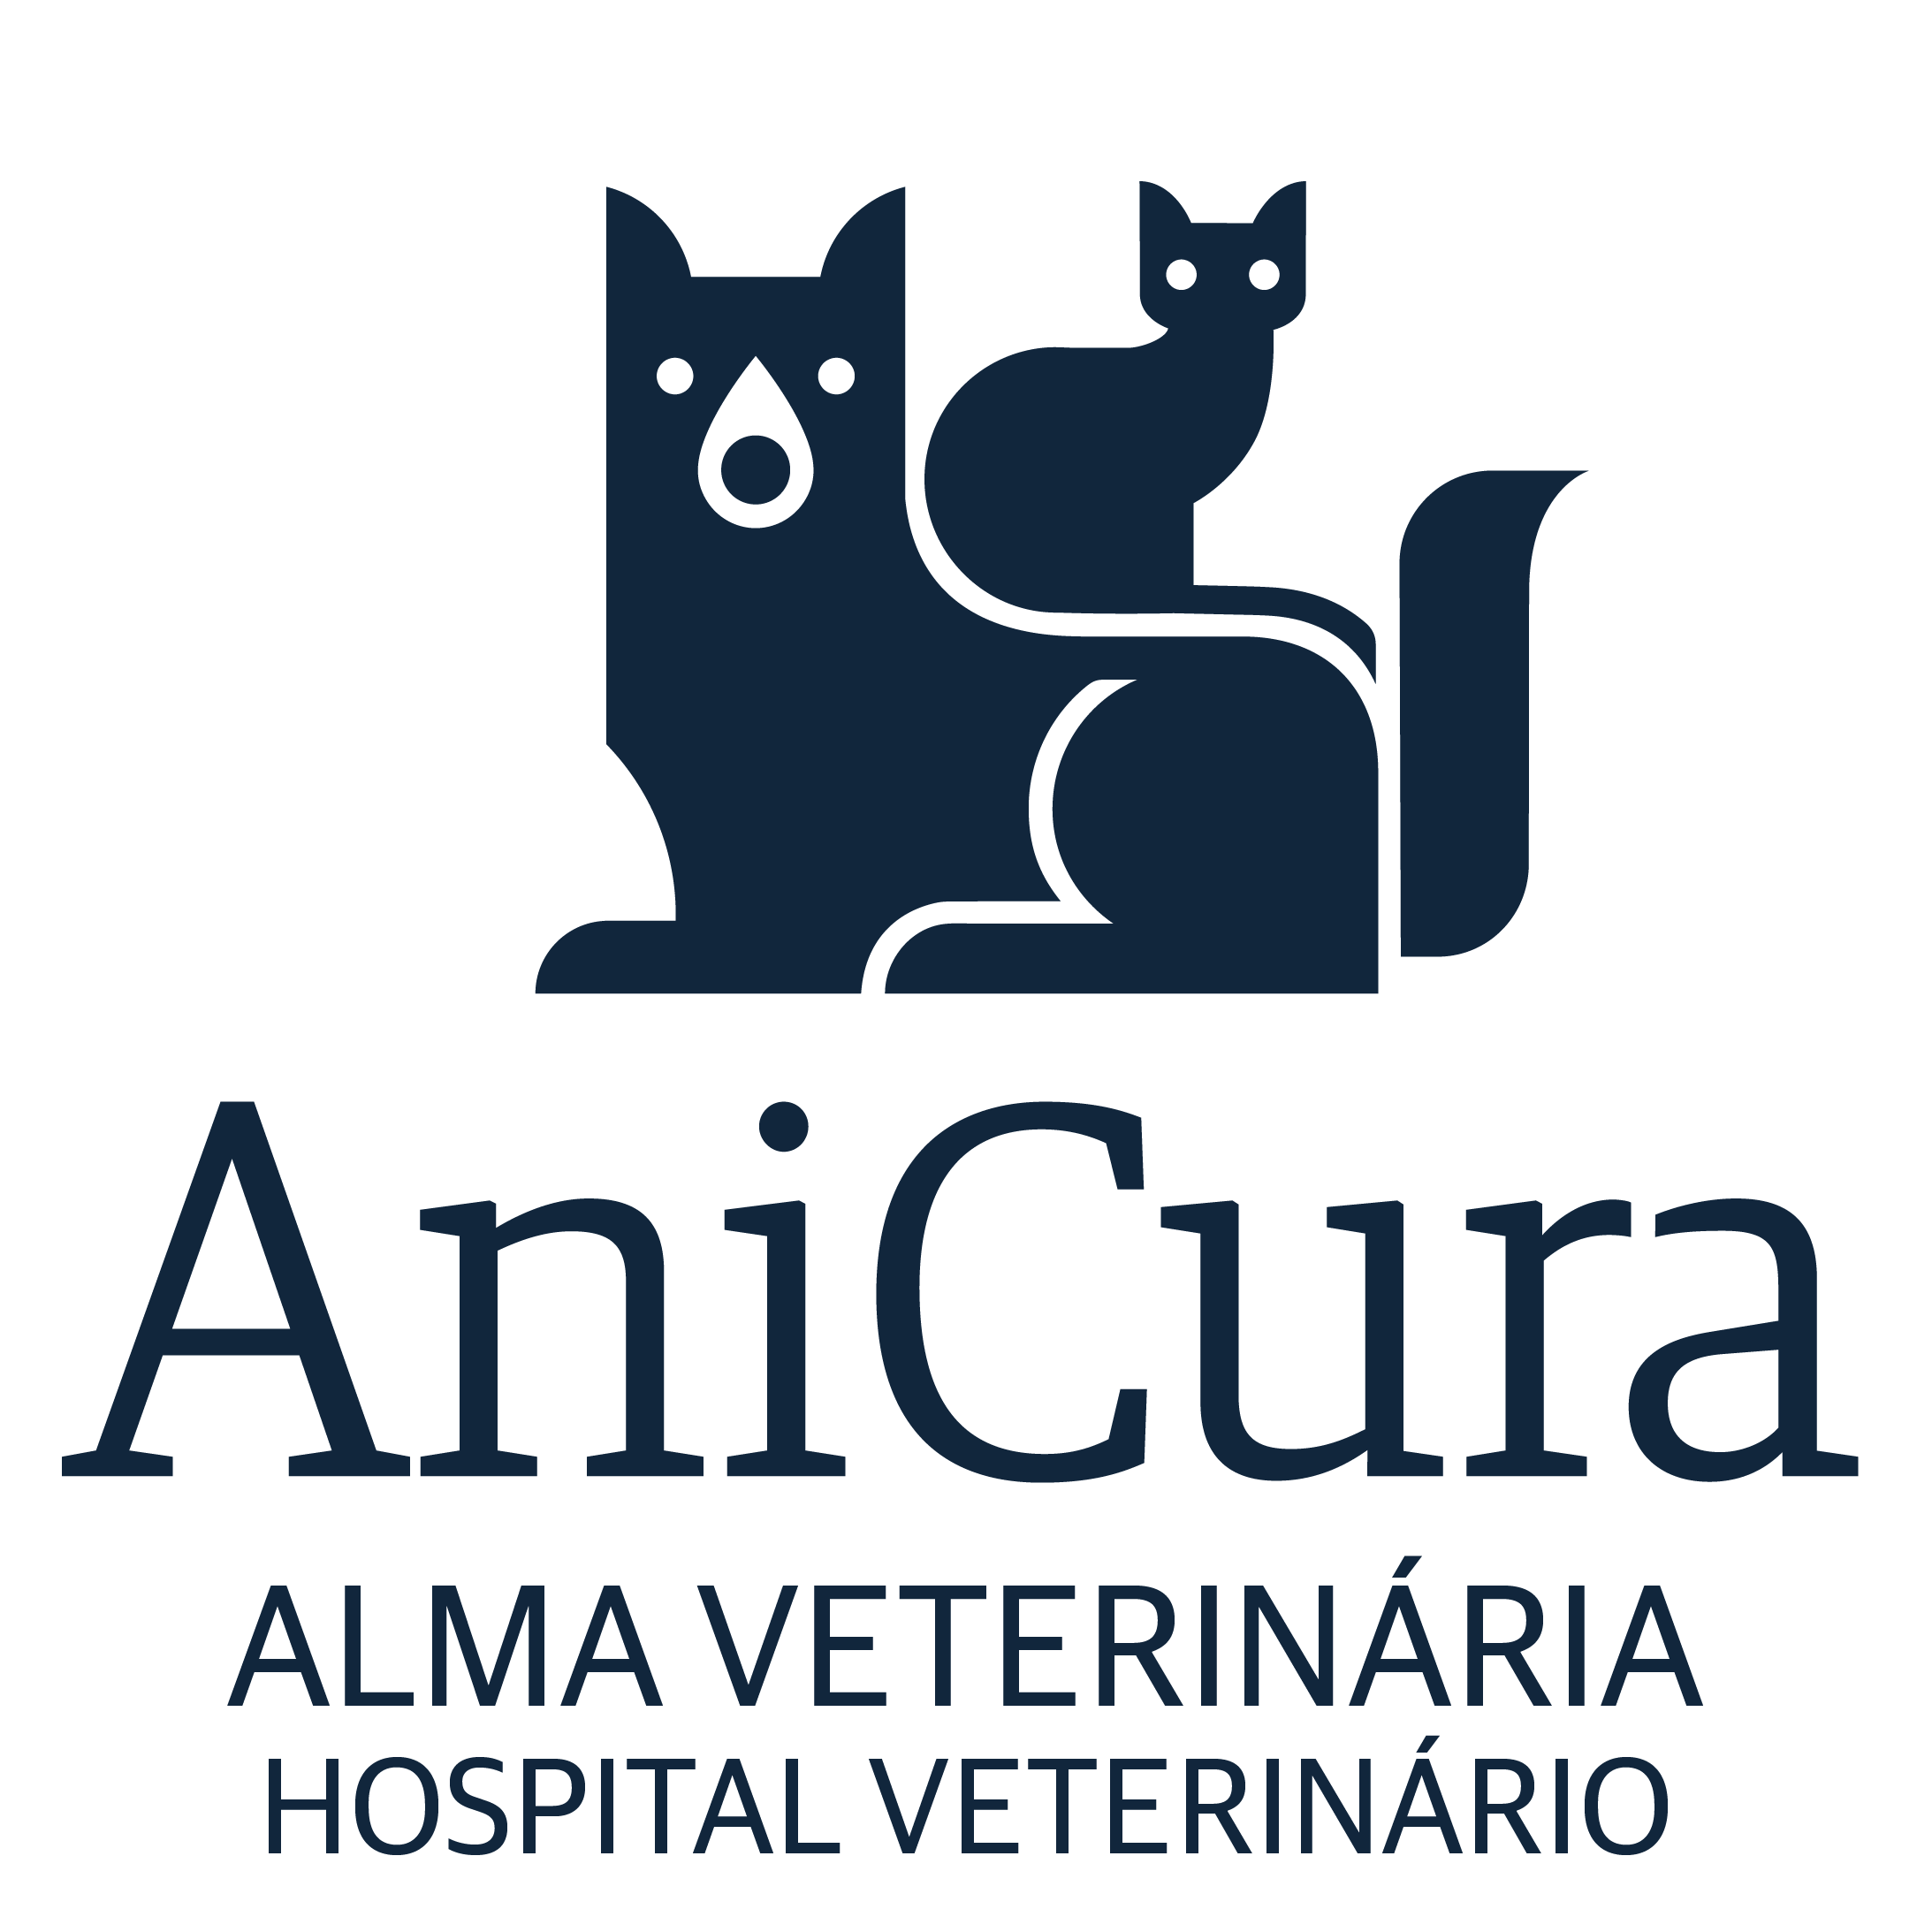 AniCura Alma Veterinária Hospital Veterinário logo